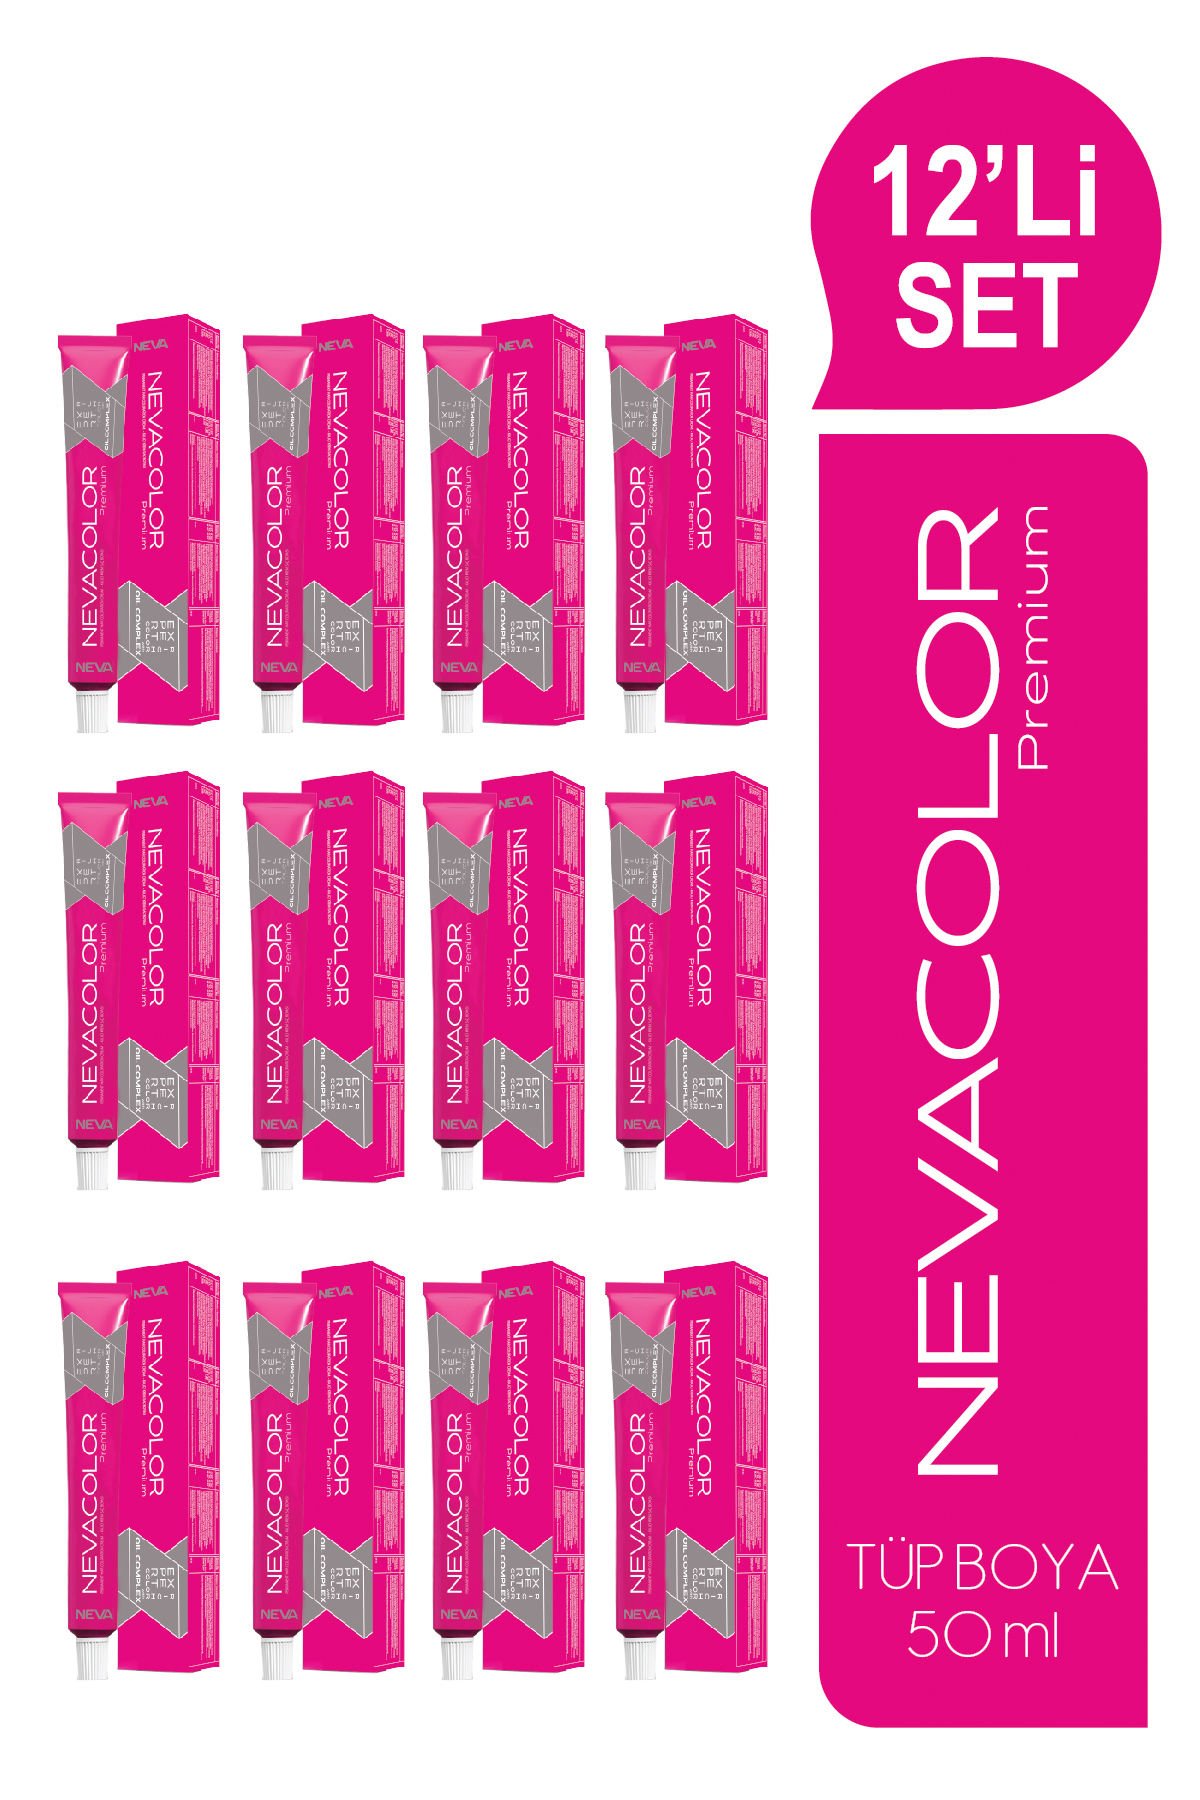 NEVACOLOR Premium 12'Lİ SET  5.0 YOĞUN AÇIK KAHVE Kalıcı Krem Saç Boyası (50ml x 12 adet)